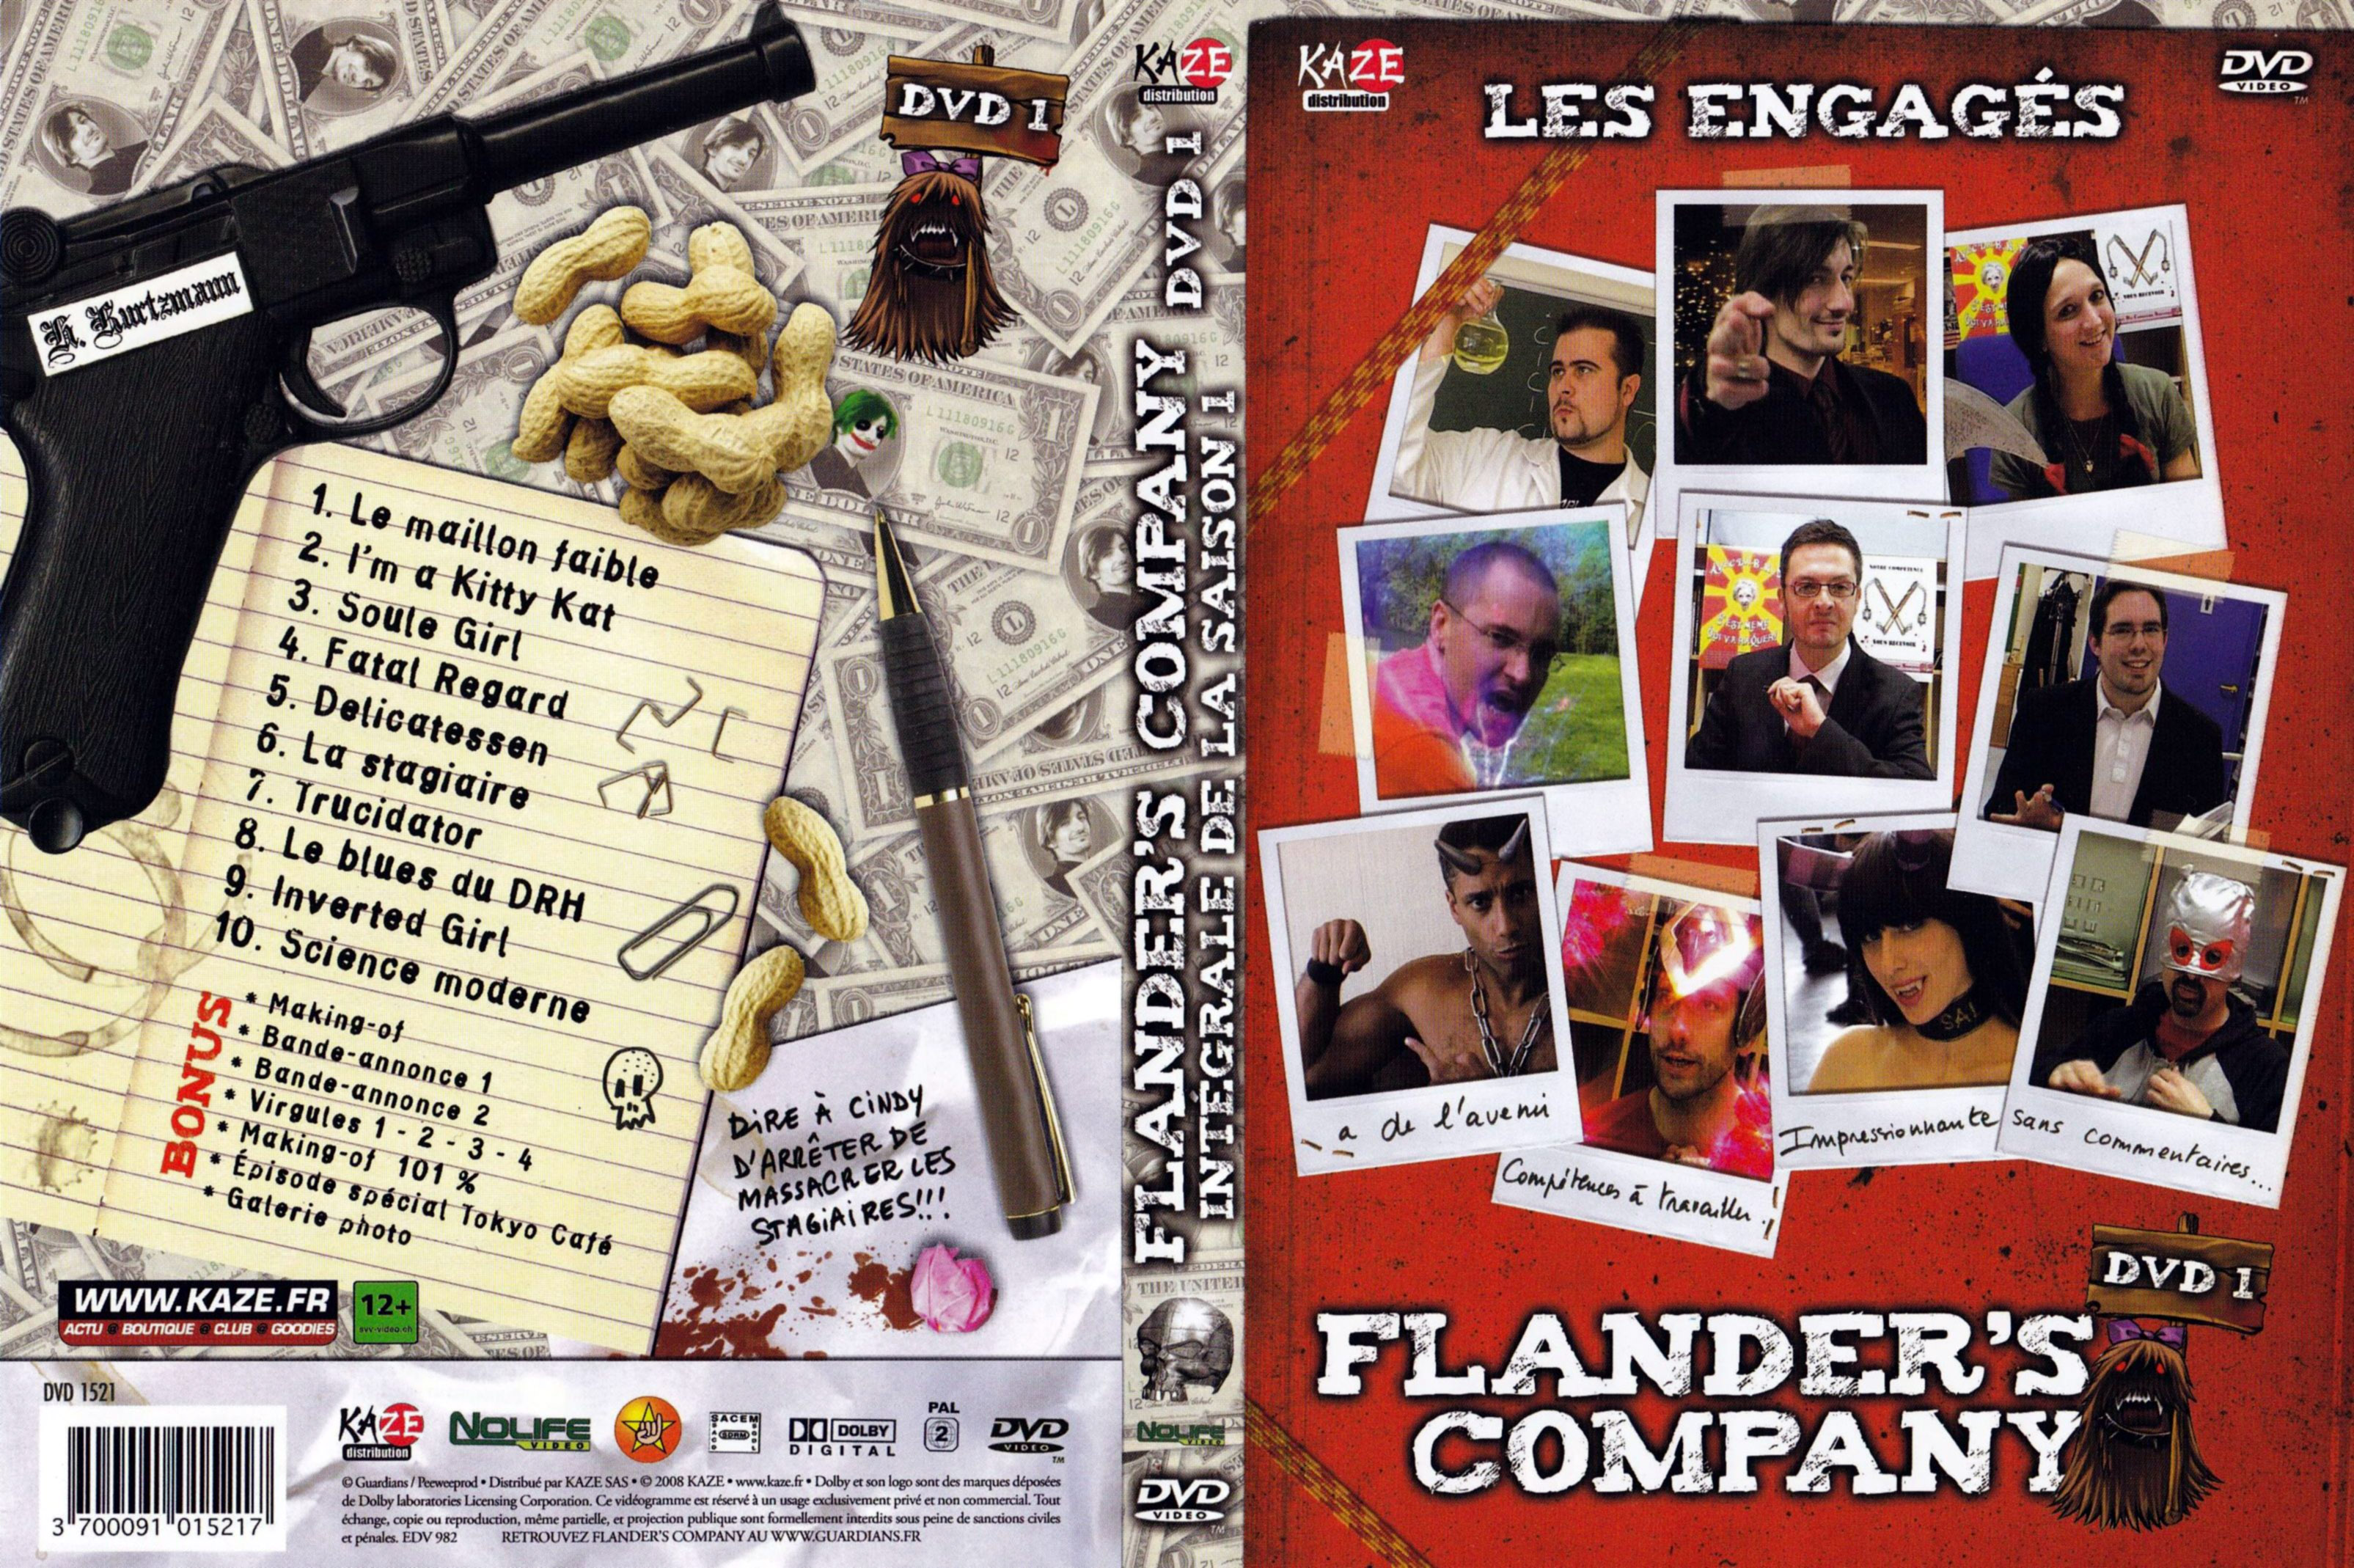 Jaquette DVD Flander